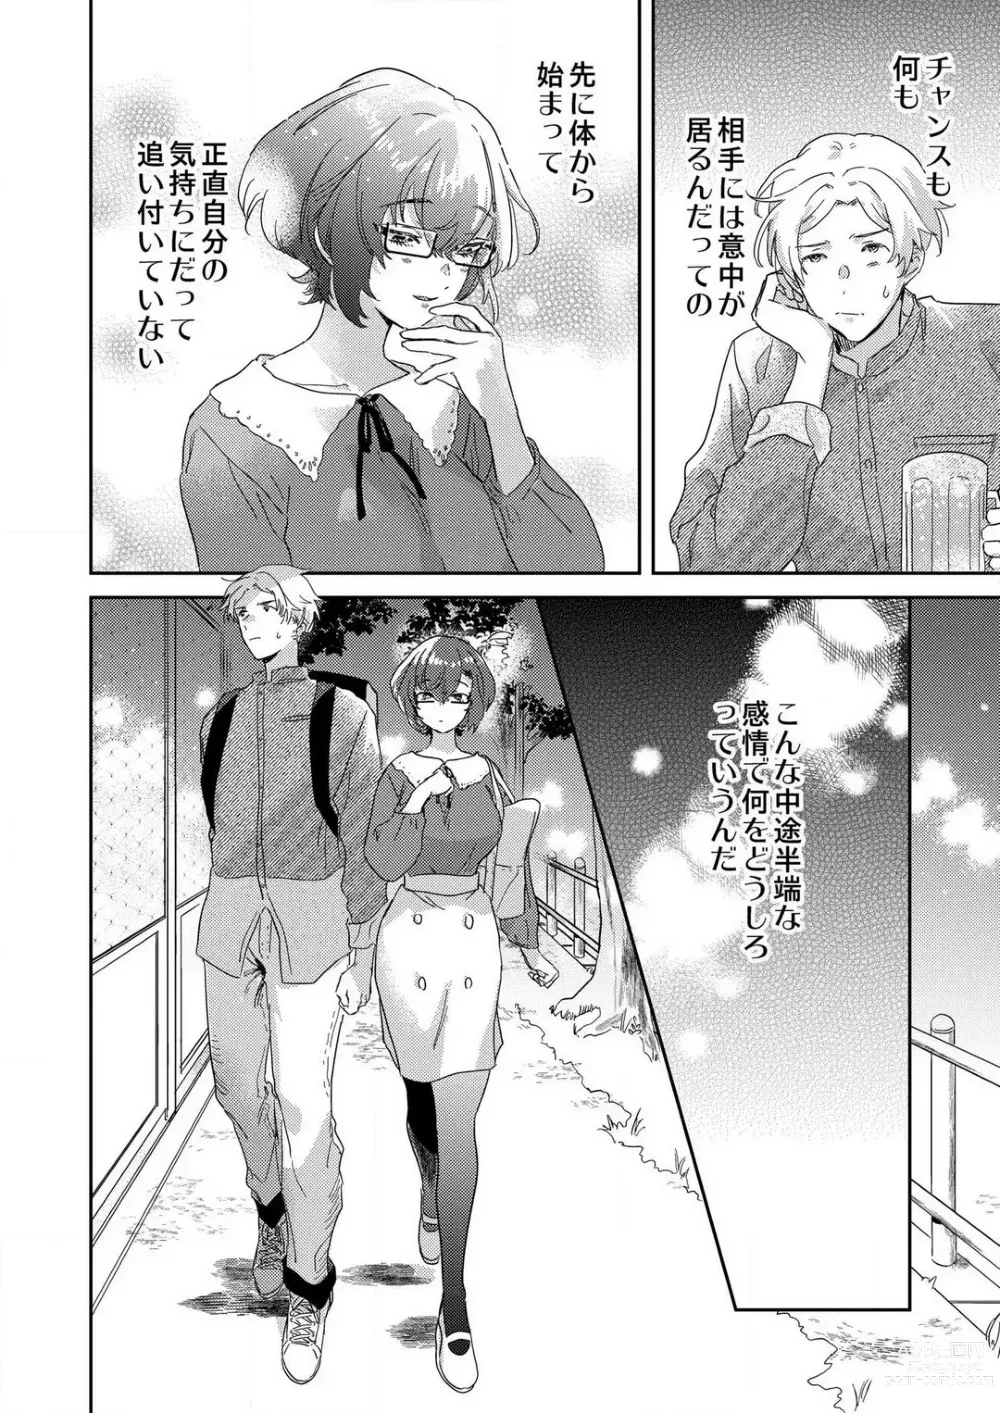 Page 82 of manga Toshokan Onēsan no Uruoi Suhada 〜 Kanojo Janainoni Oku Made Torotoro Dekiai Sex 〜[R18] 1-4